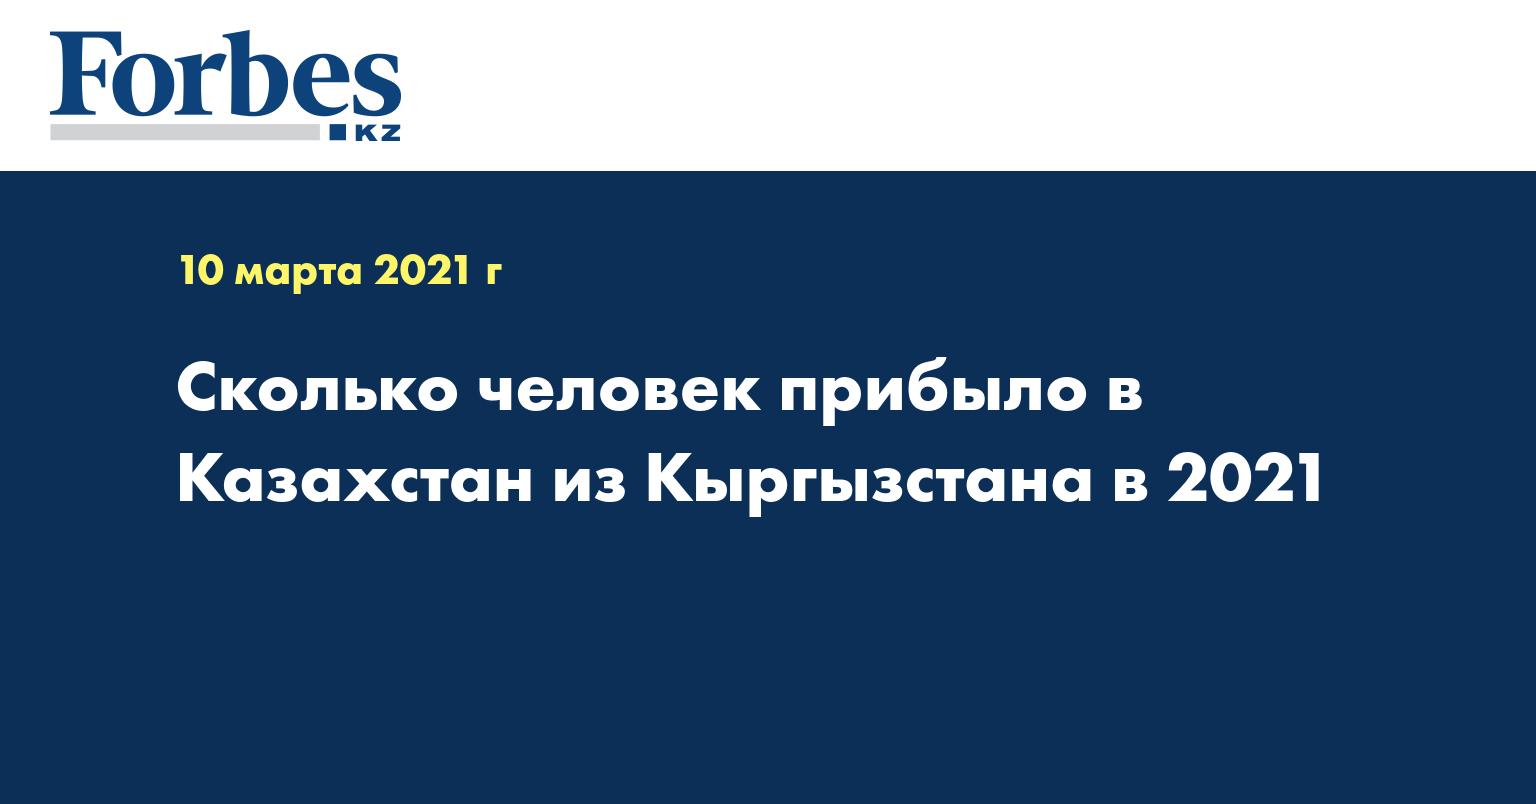 Сколько человек прибыло в Казахстан из Кыргызстана в 2021